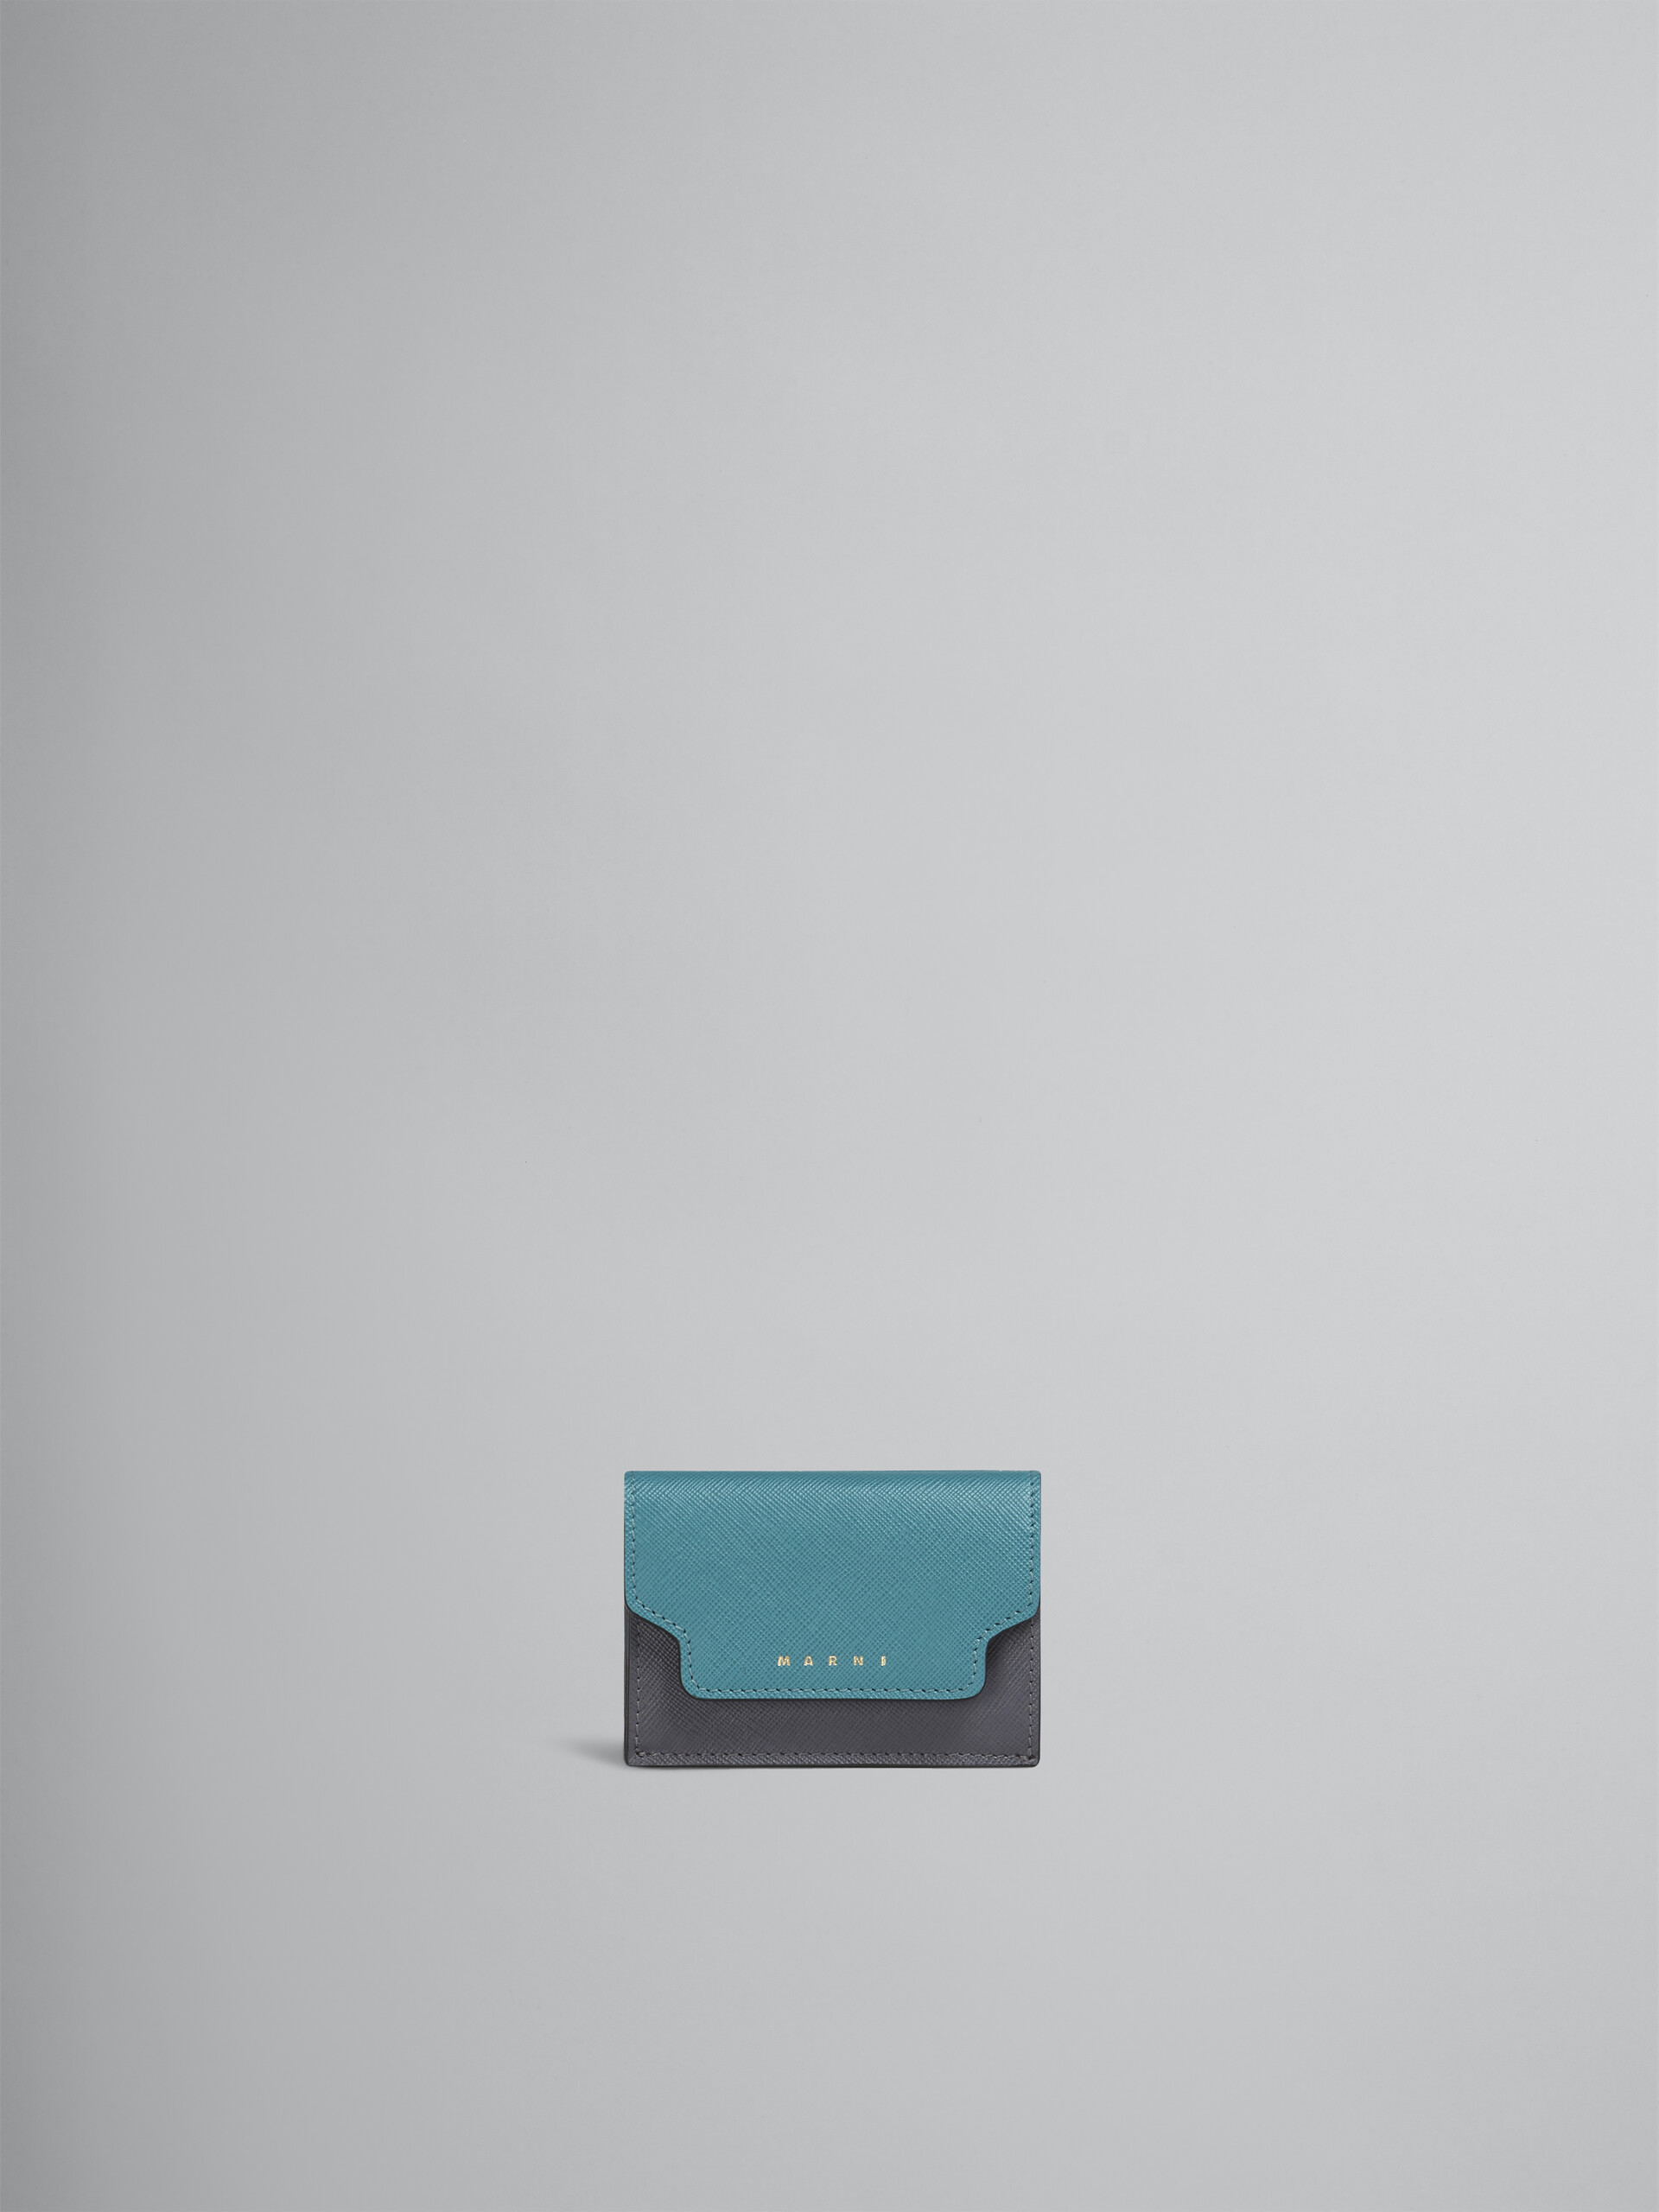 ブルー グレー レッド サフィアーノレザー製 三つ折りウォレット - 財布 - Image 1